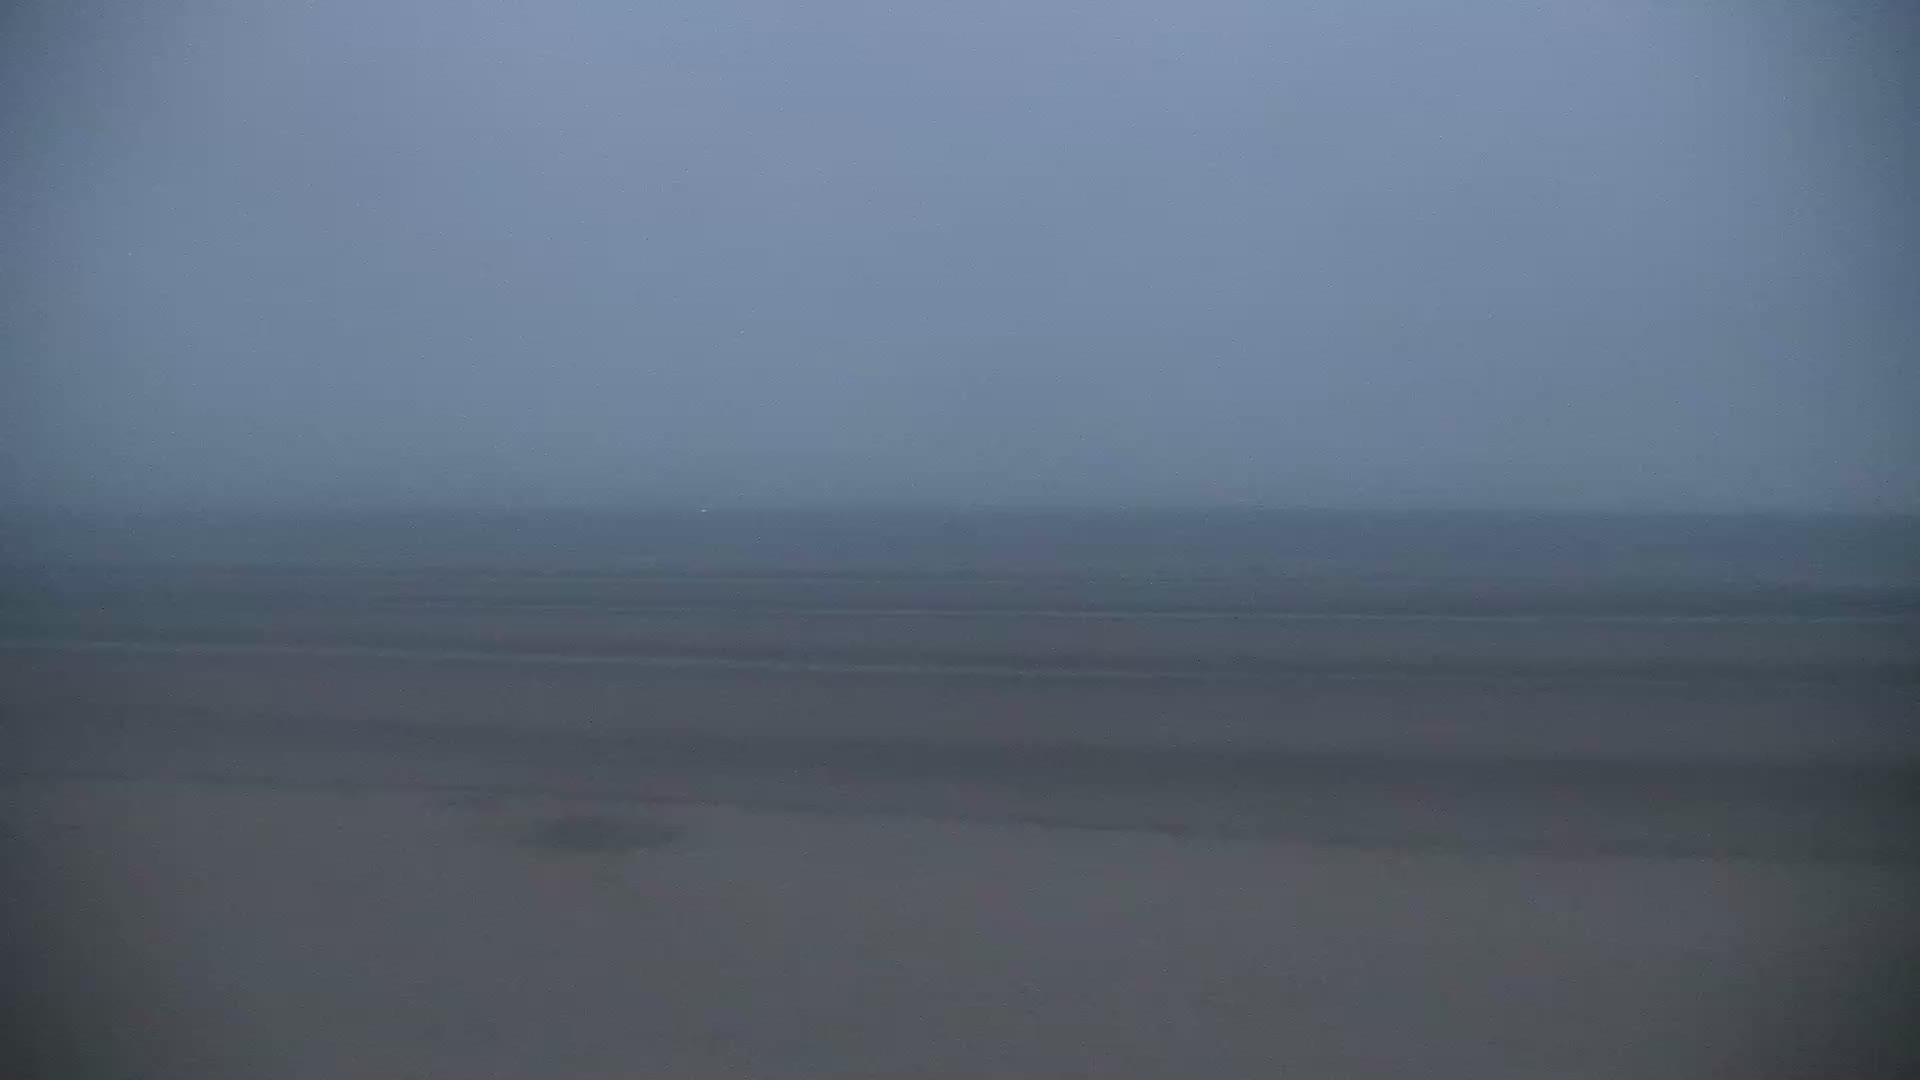 Dunkerque Man. 05:26